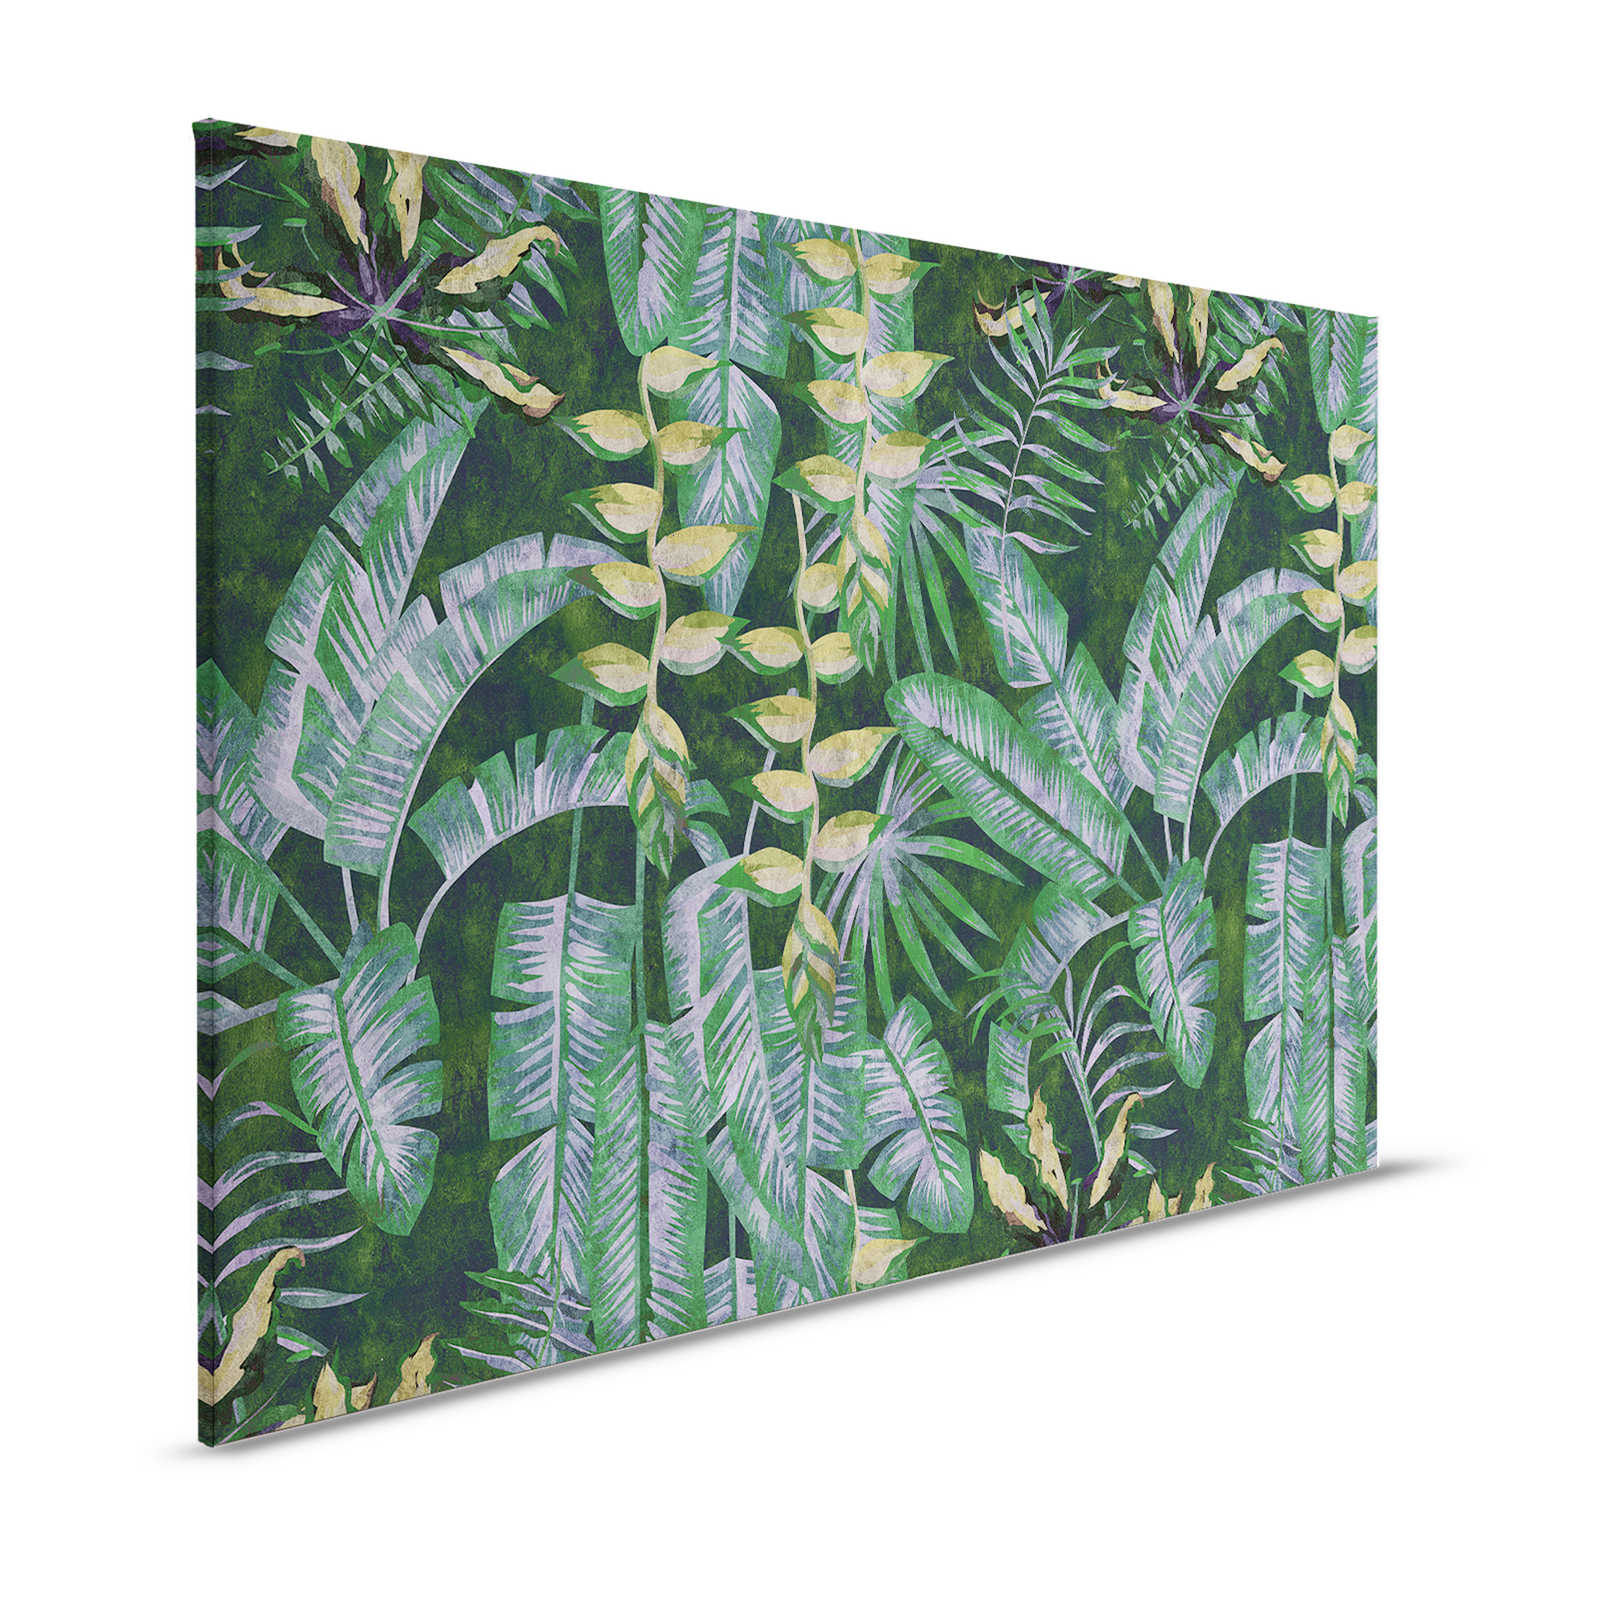 Tropicana 2 - Leinwandbild mit tropische Pflanzen – 1,20 m x 0,80 m
